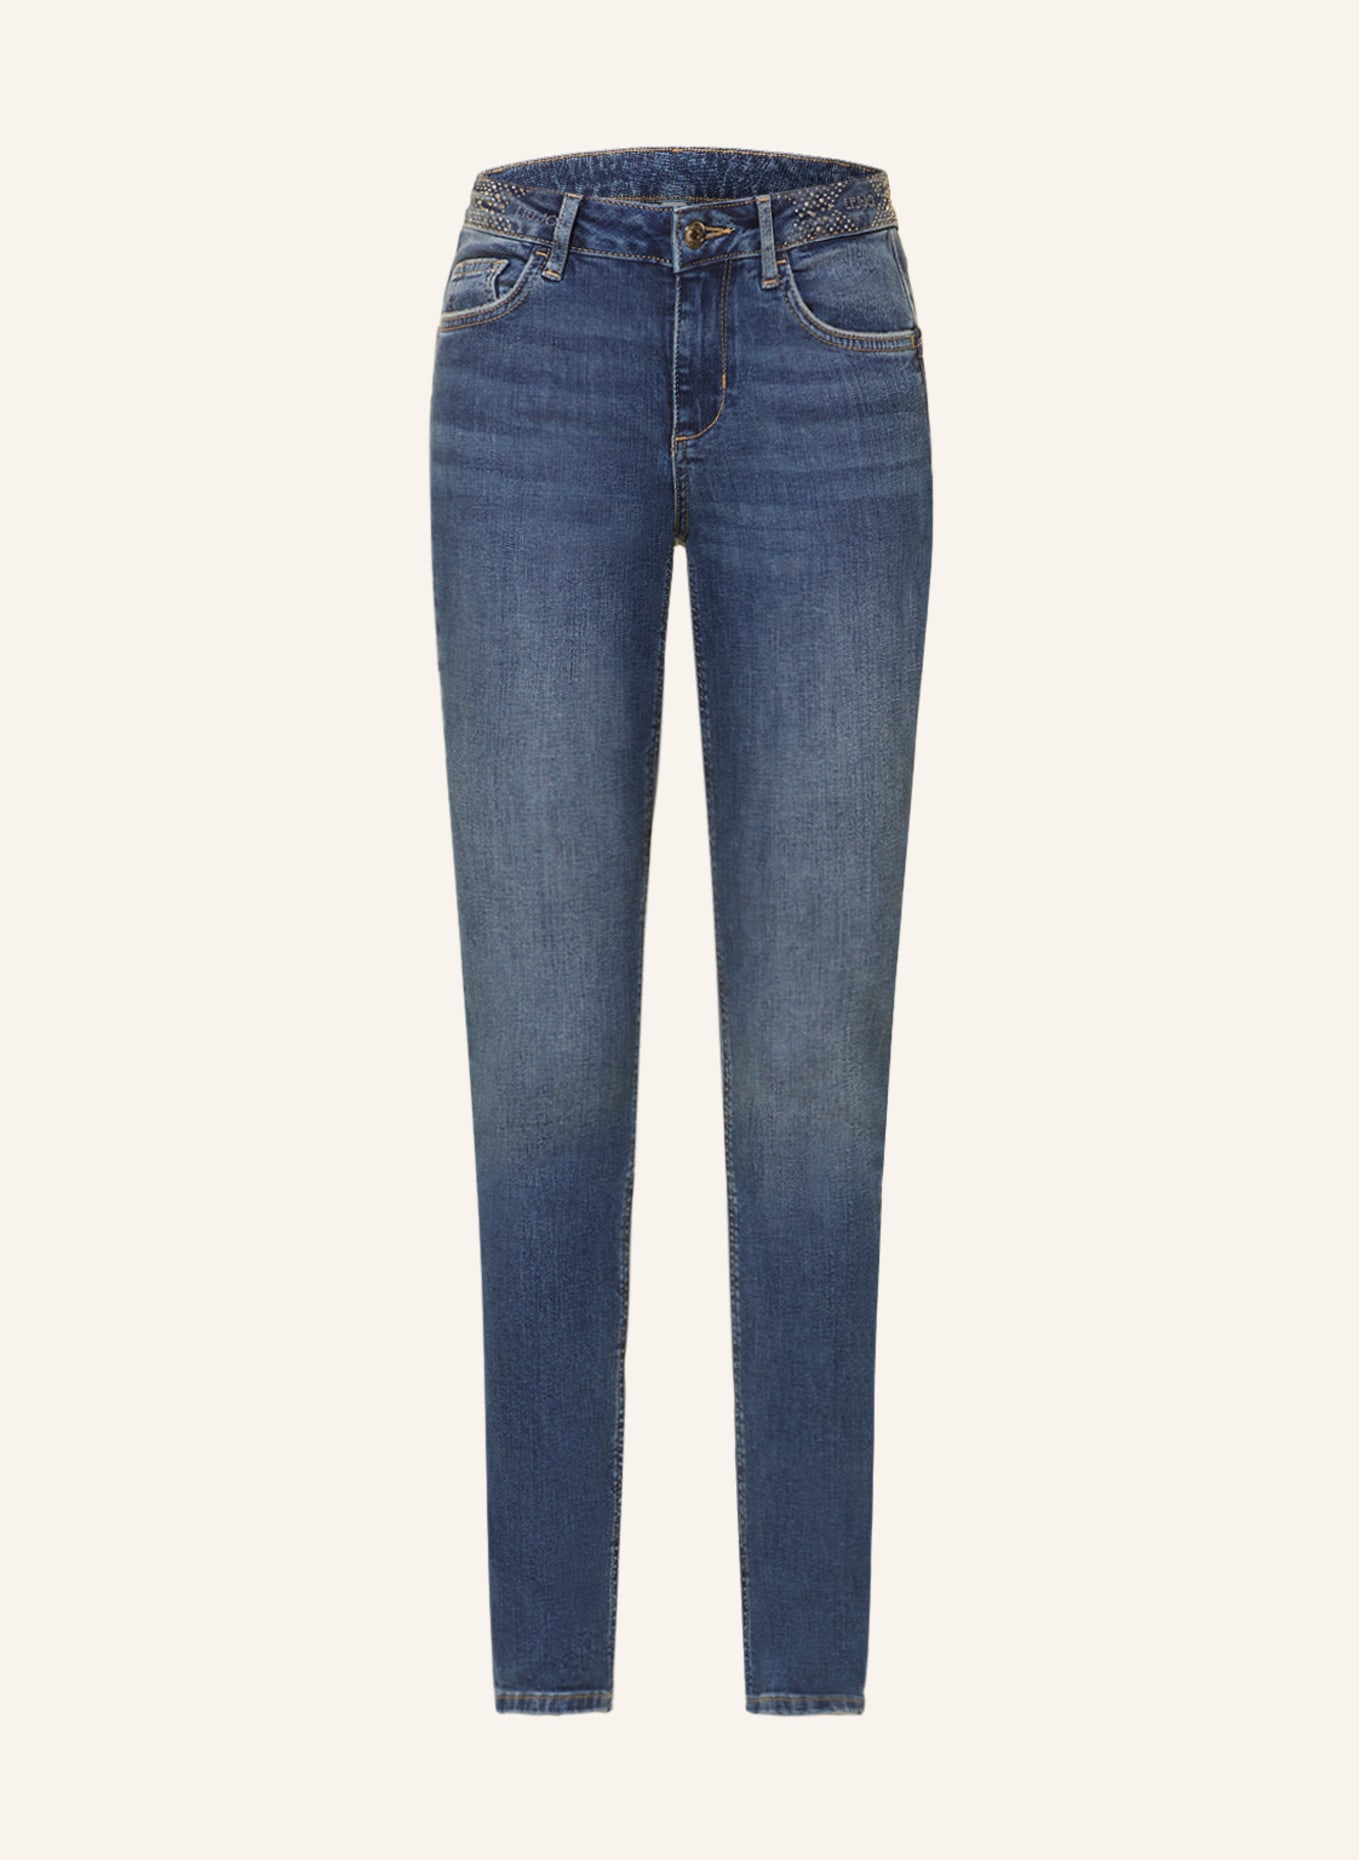 LIU JO Jeans mit Schmucksteinen, Farbe: 78282 Den.Blue dk.seductiv (Bild 1)